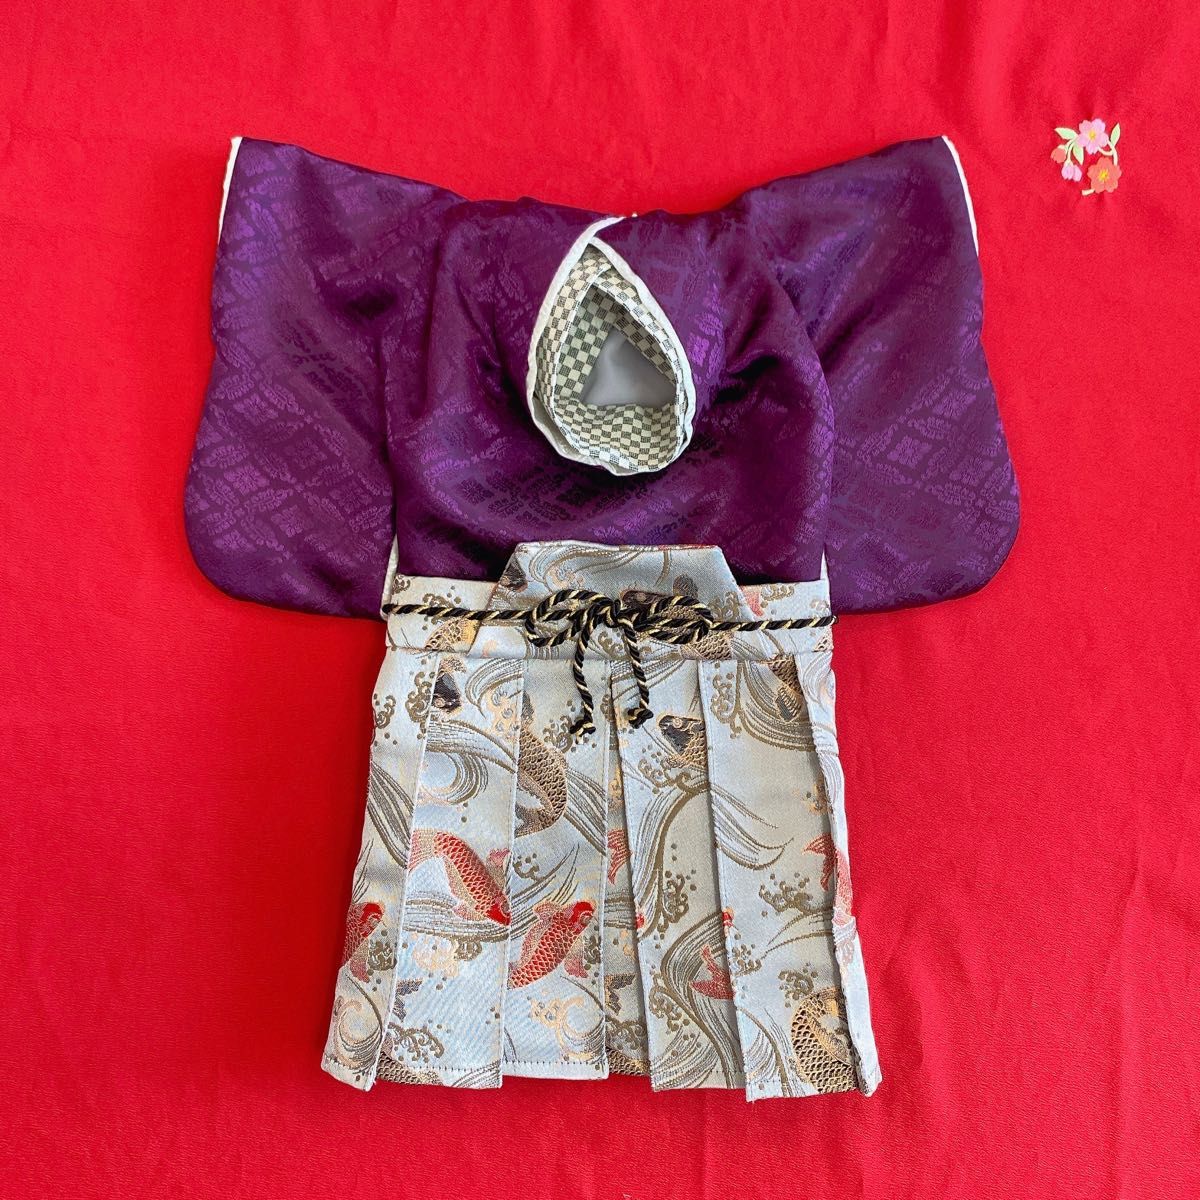 犬の袴 犬用本格着物&袴セット M 鯉柄金襴 江戸紫×グレー 犬服